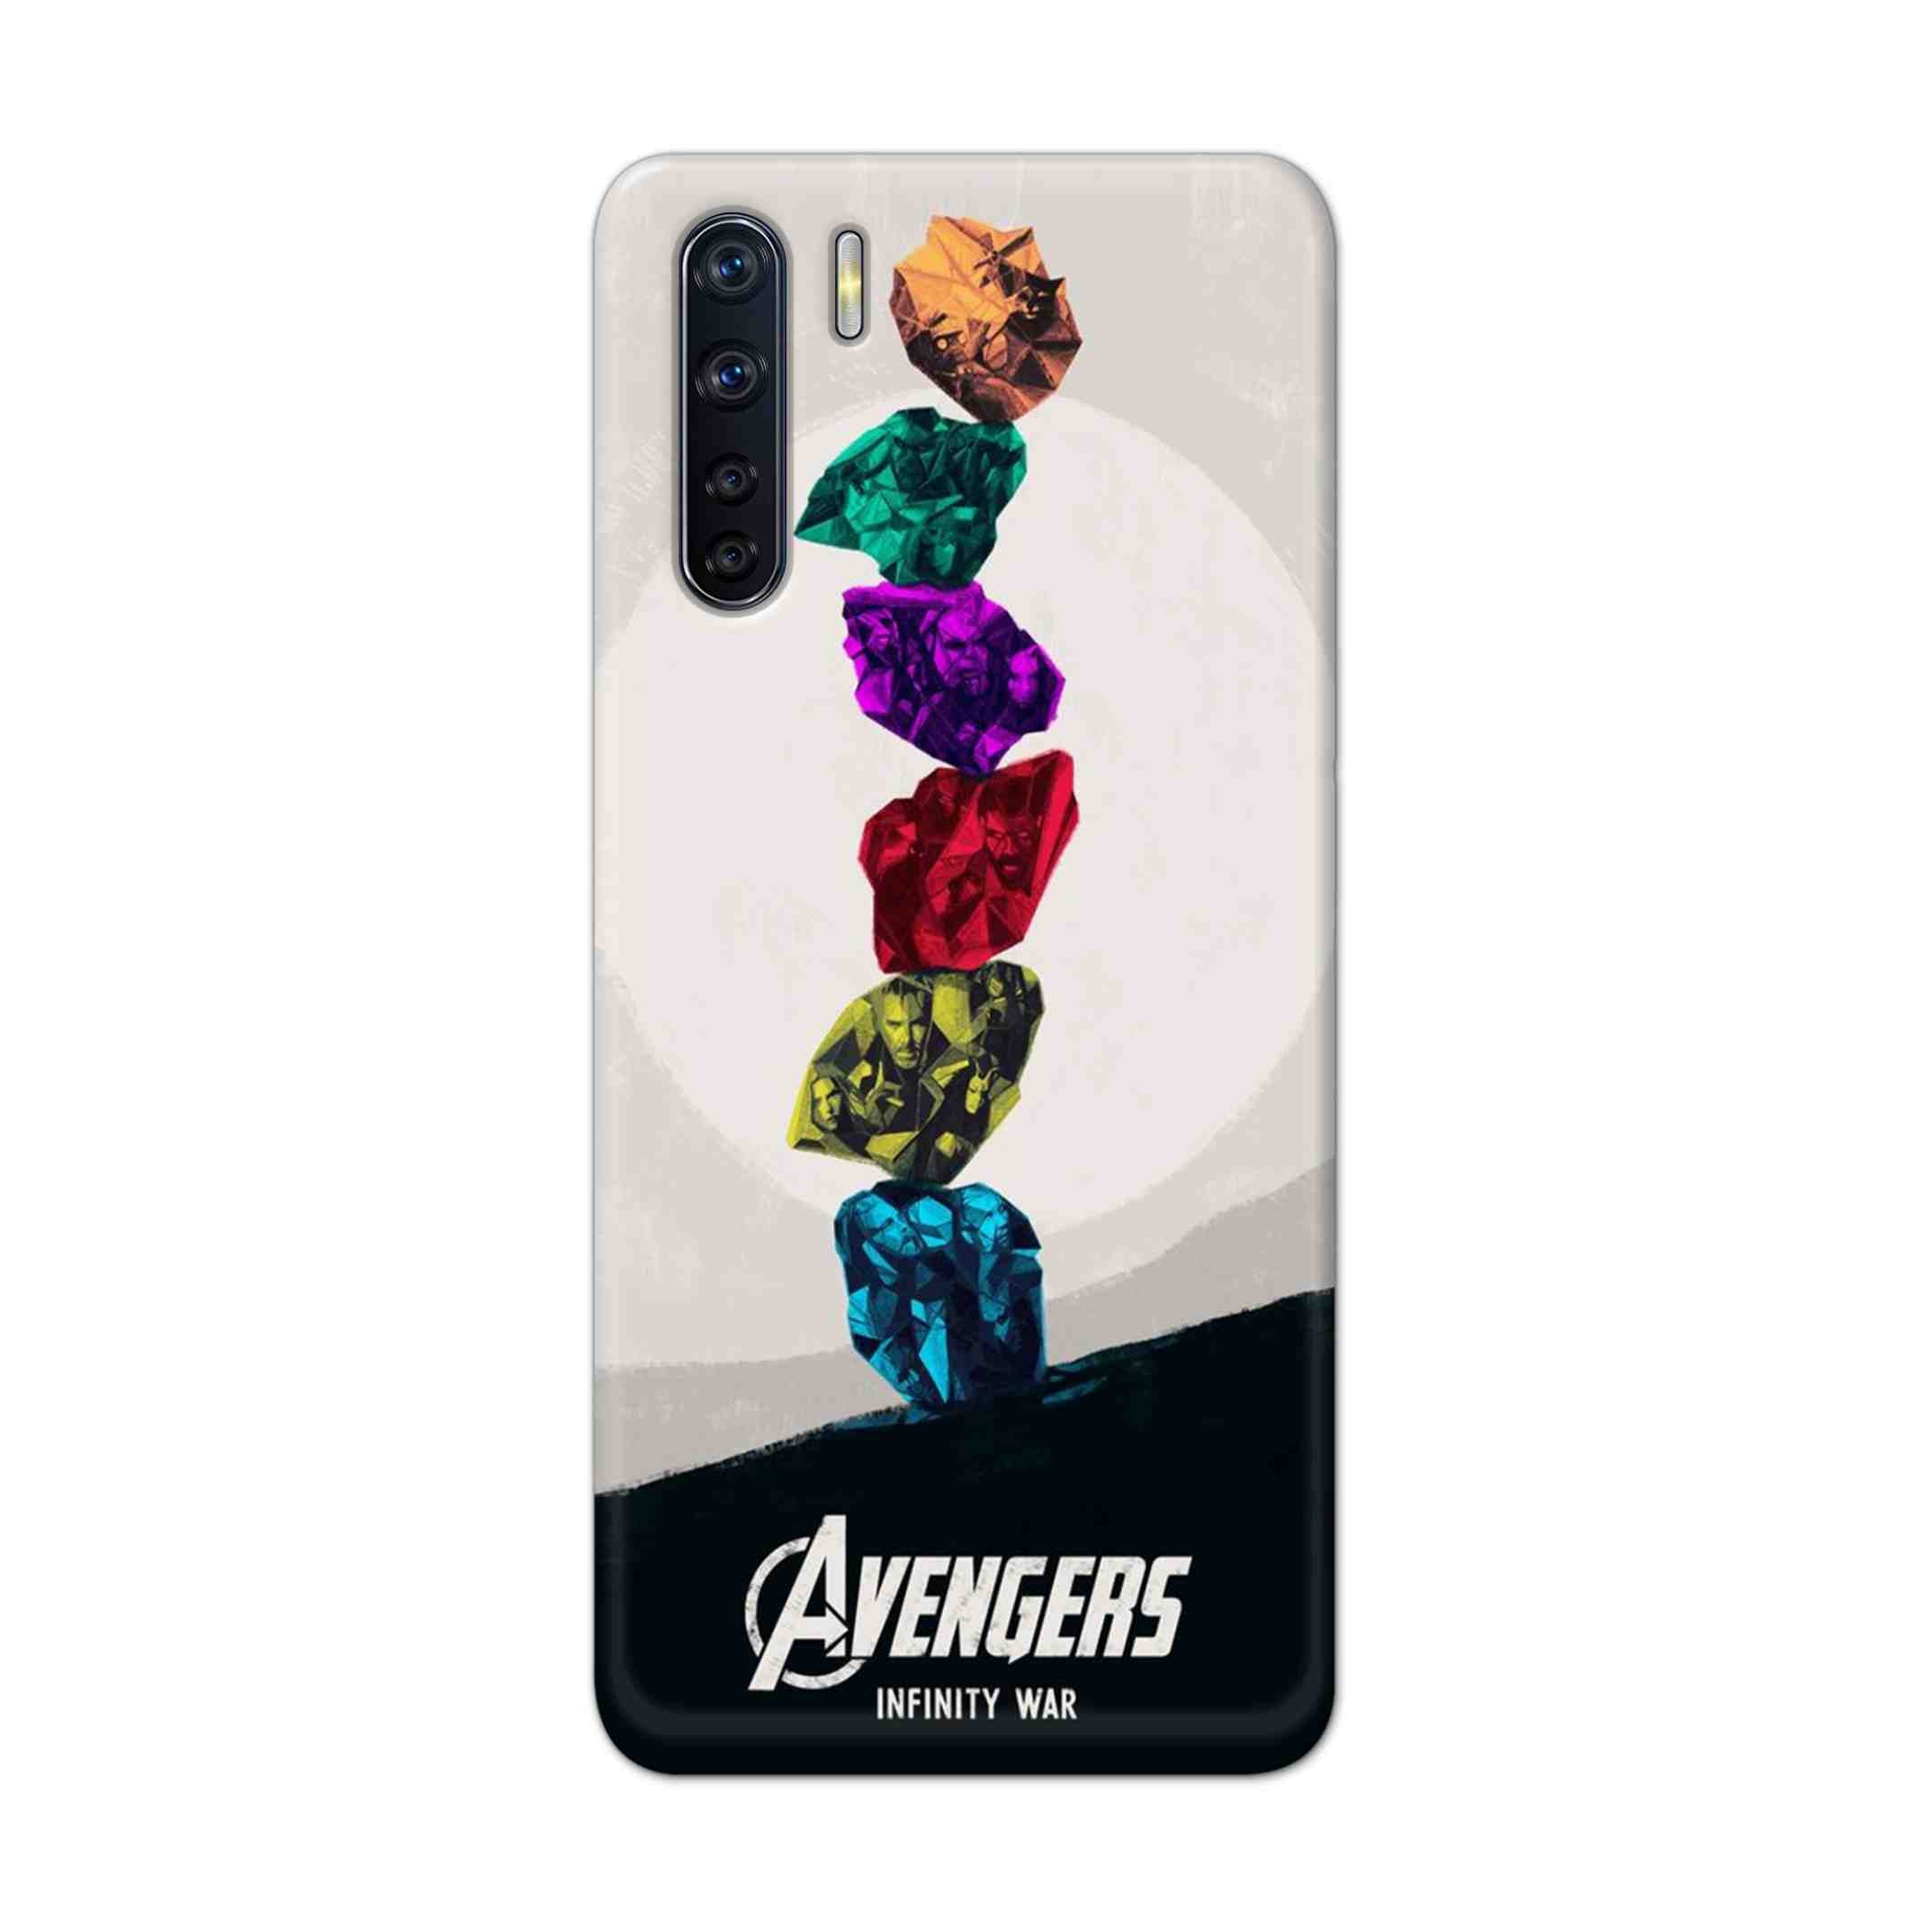 Buy Avengers Stone Hard Back Mobile Phone Case Cover For OPPO F15 Online